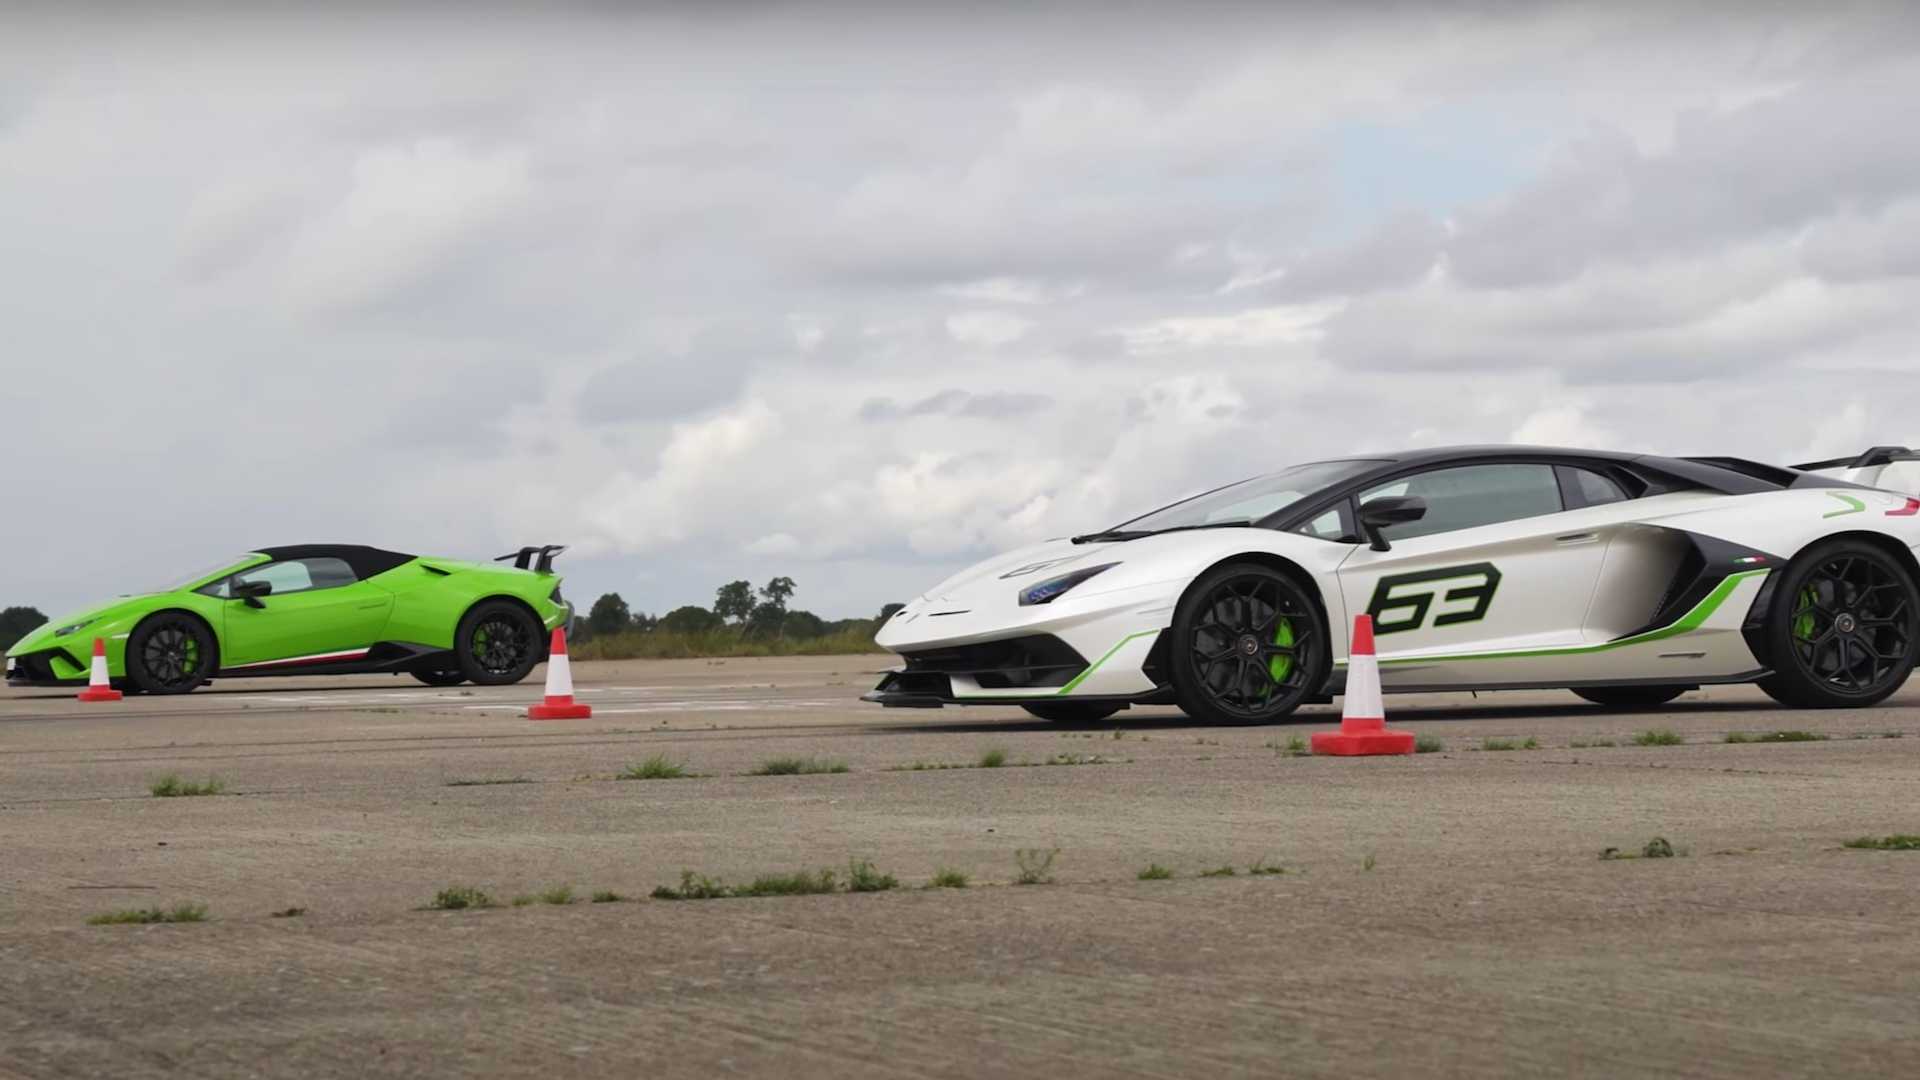 Huracán Performante ou Aventador SVJ. Qual o Lamborghini mais rápido? |  Automais